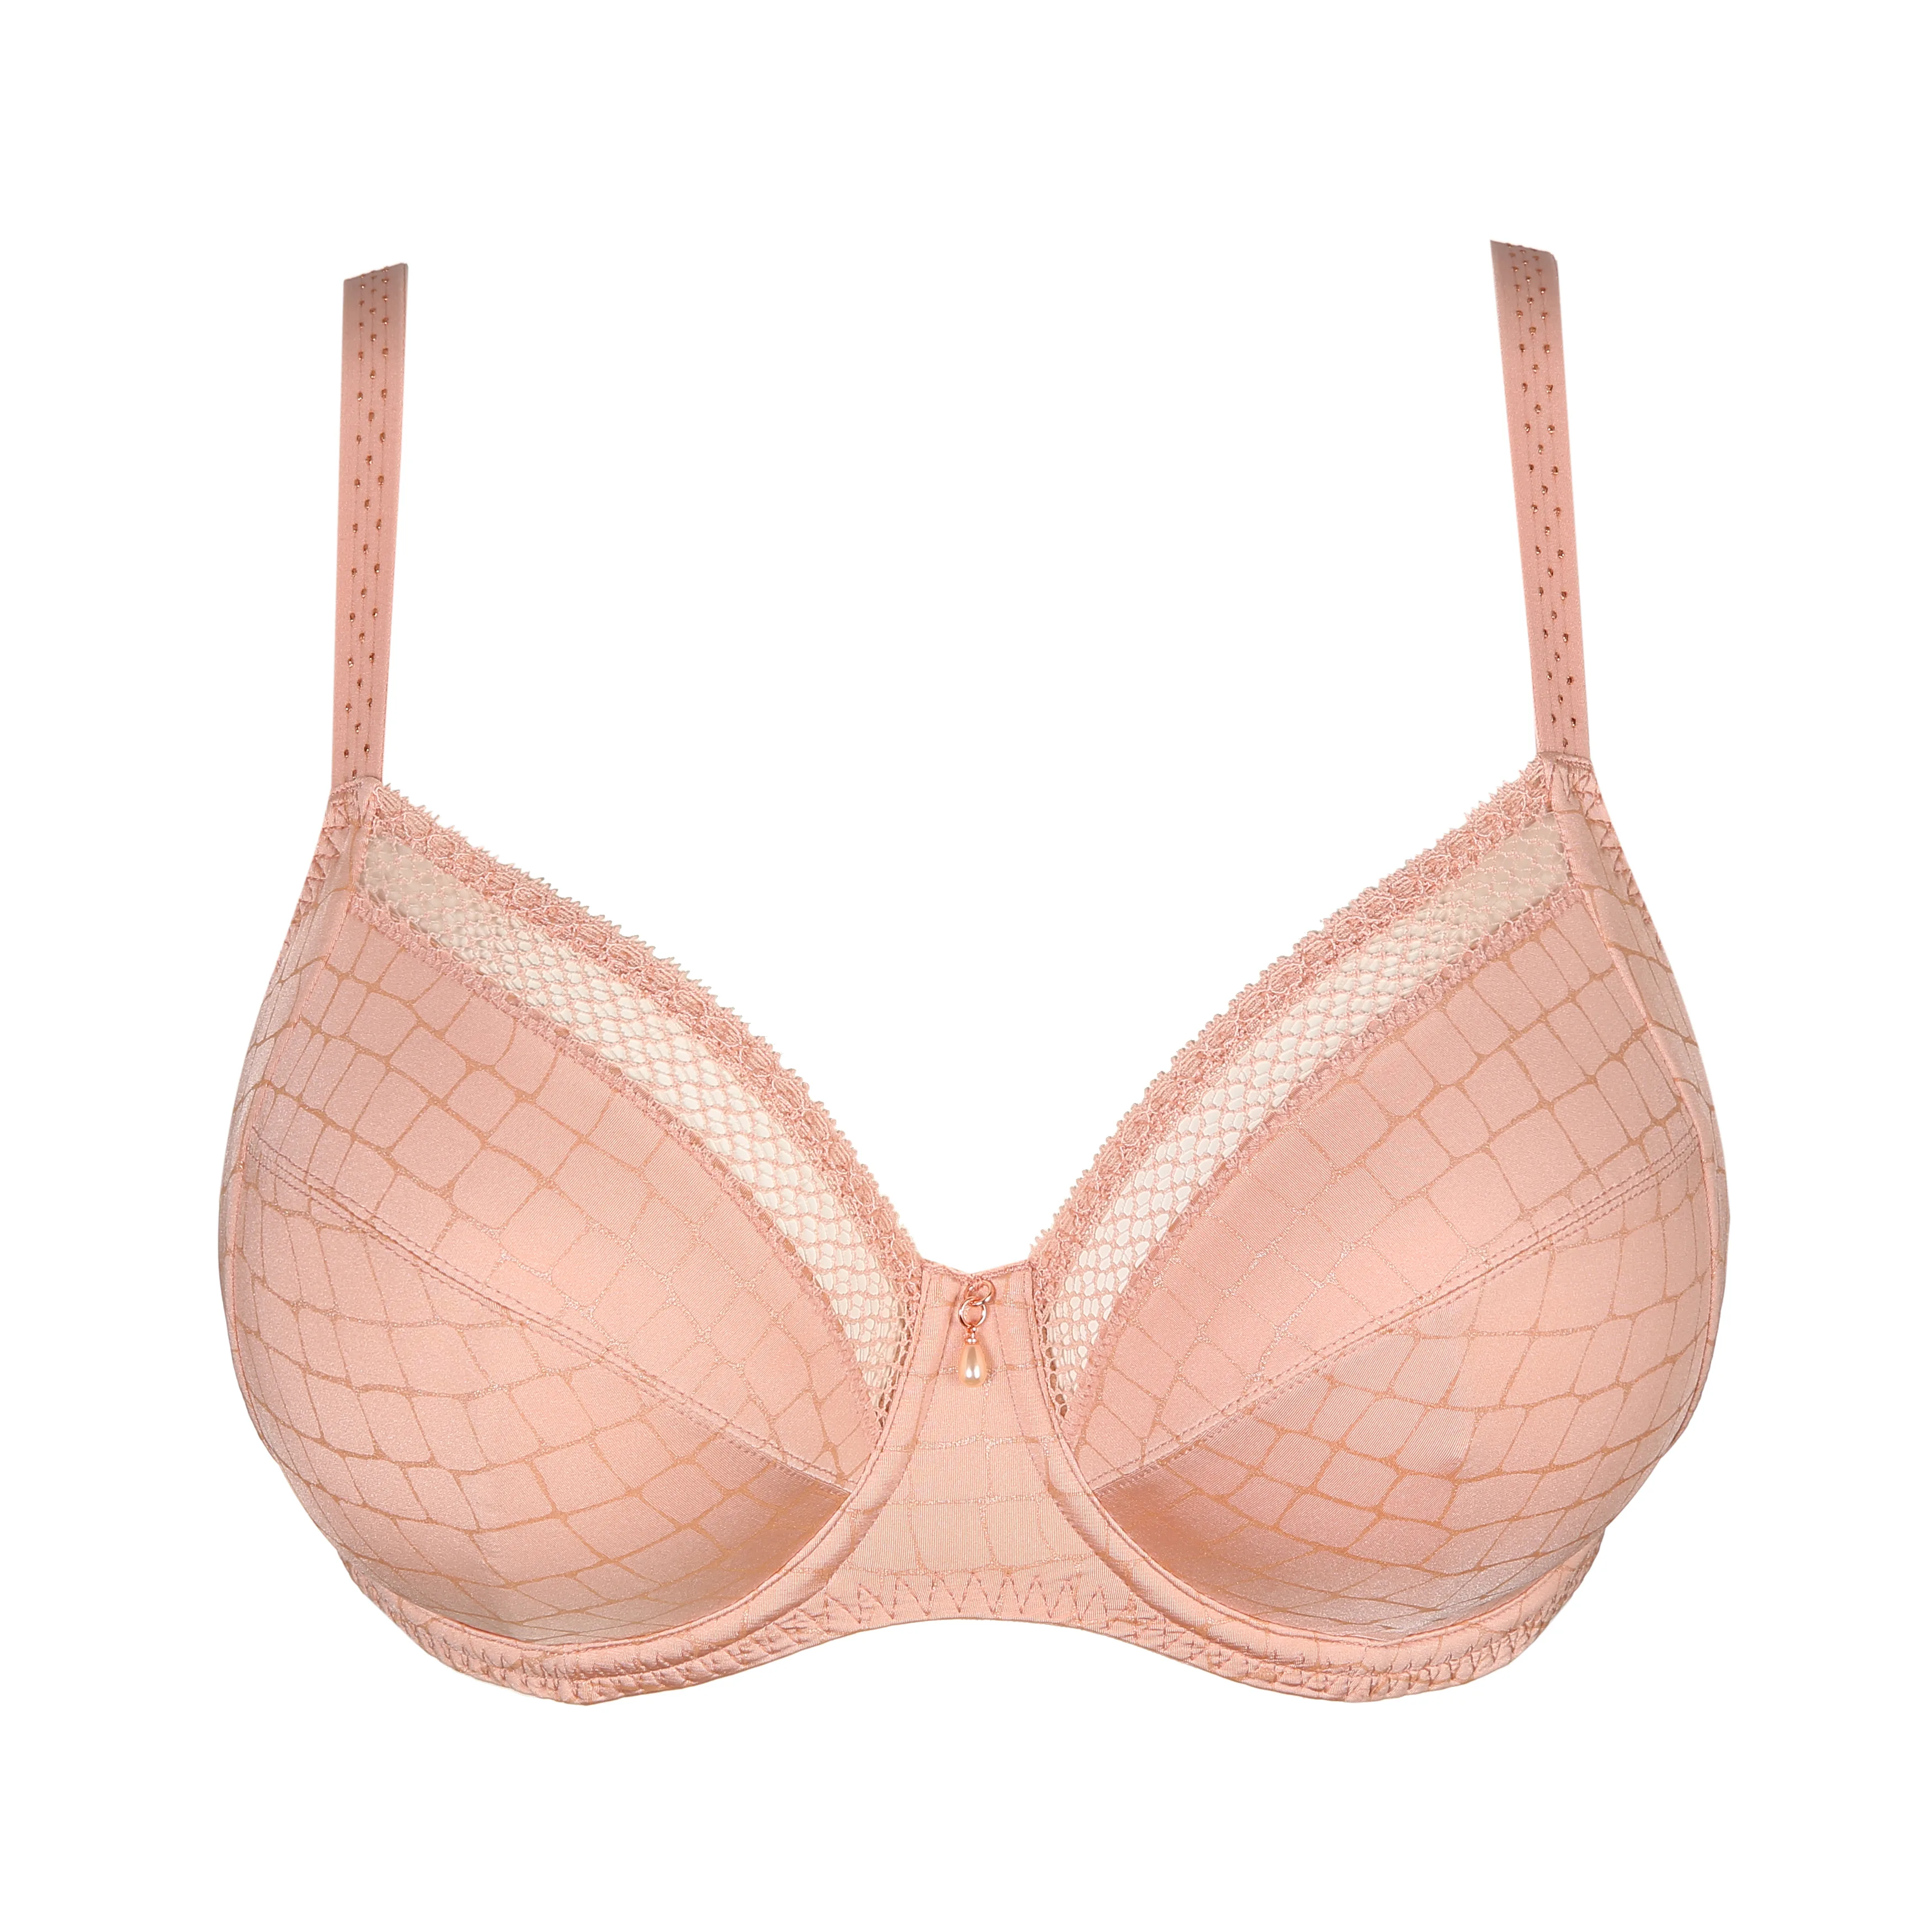 Bravado Underwear - Prima Donna Nyssa in Sweety Pink has arrived